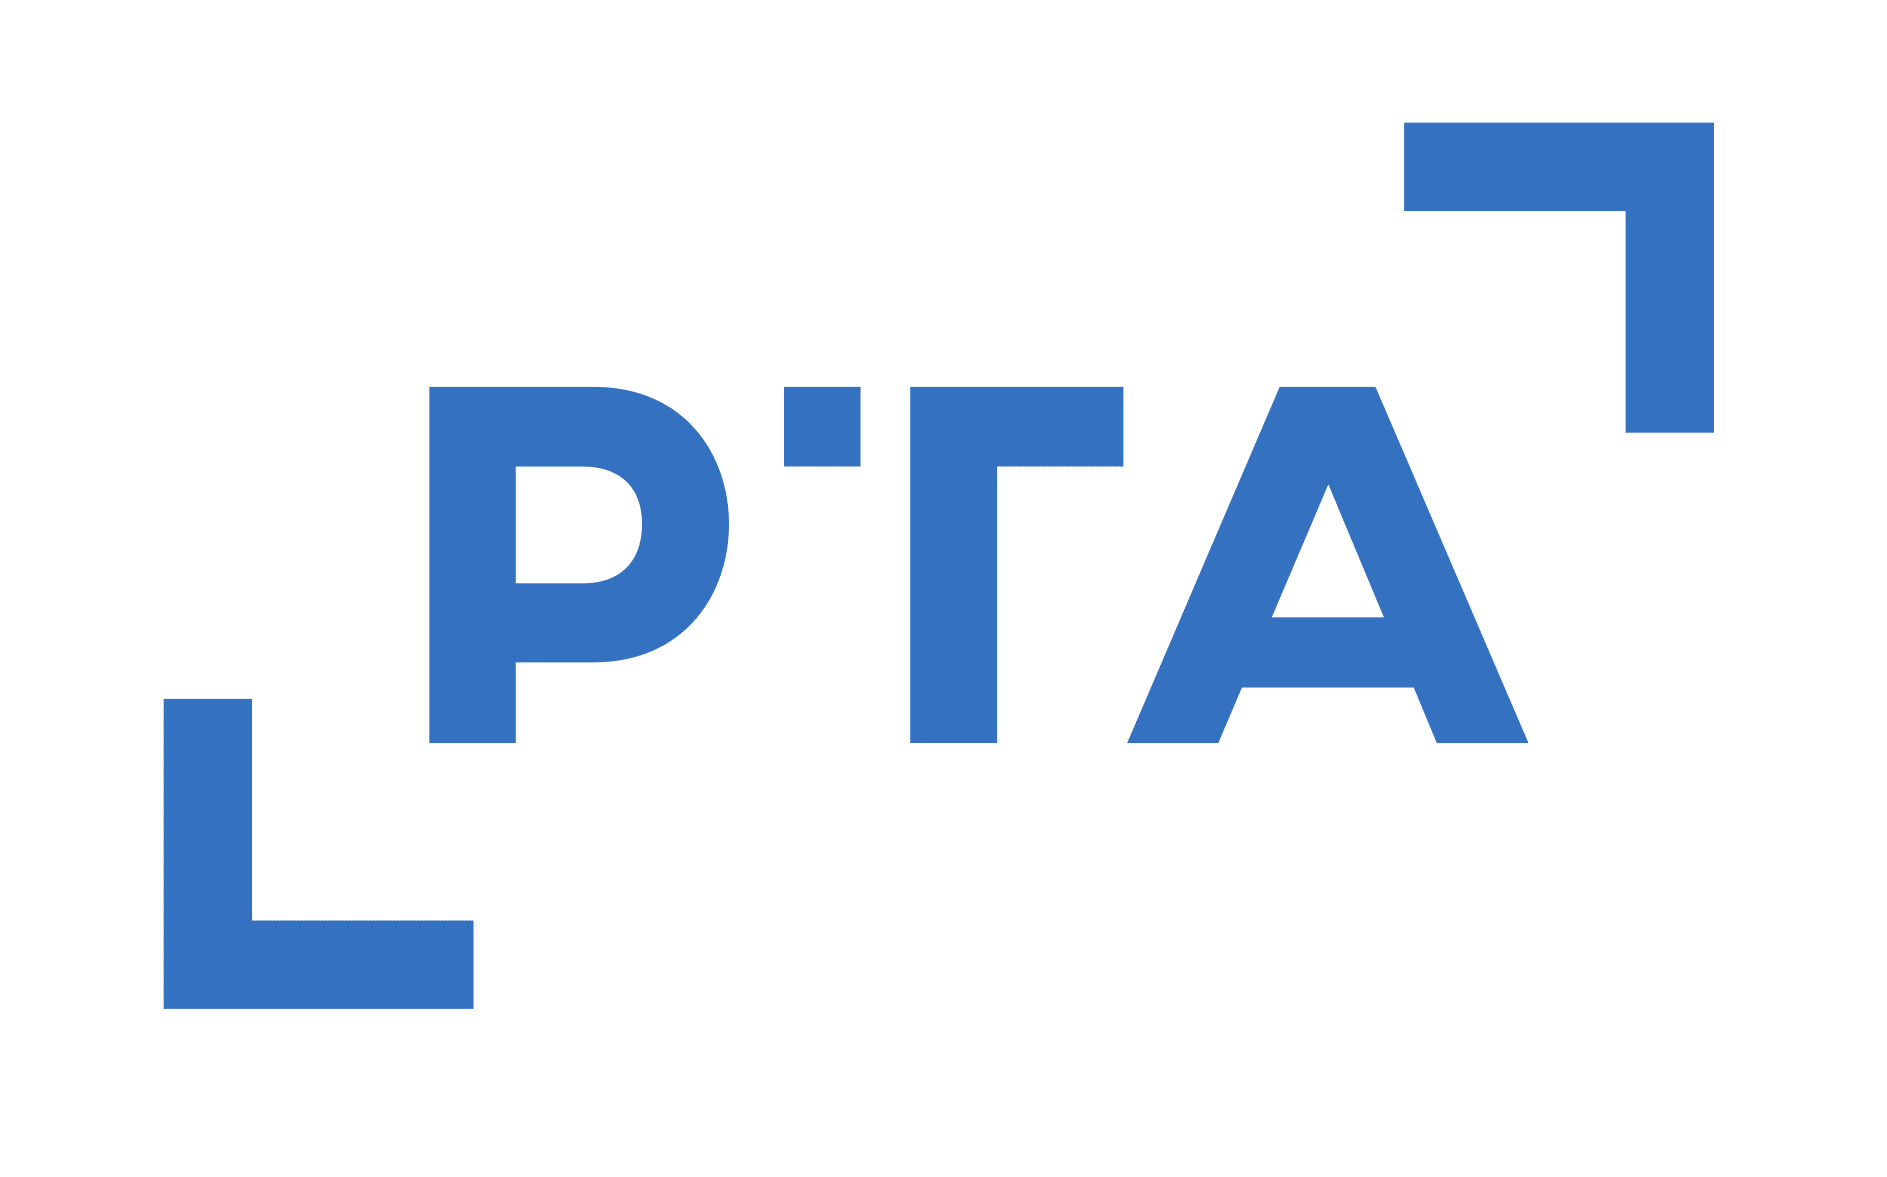 PTA-Logo